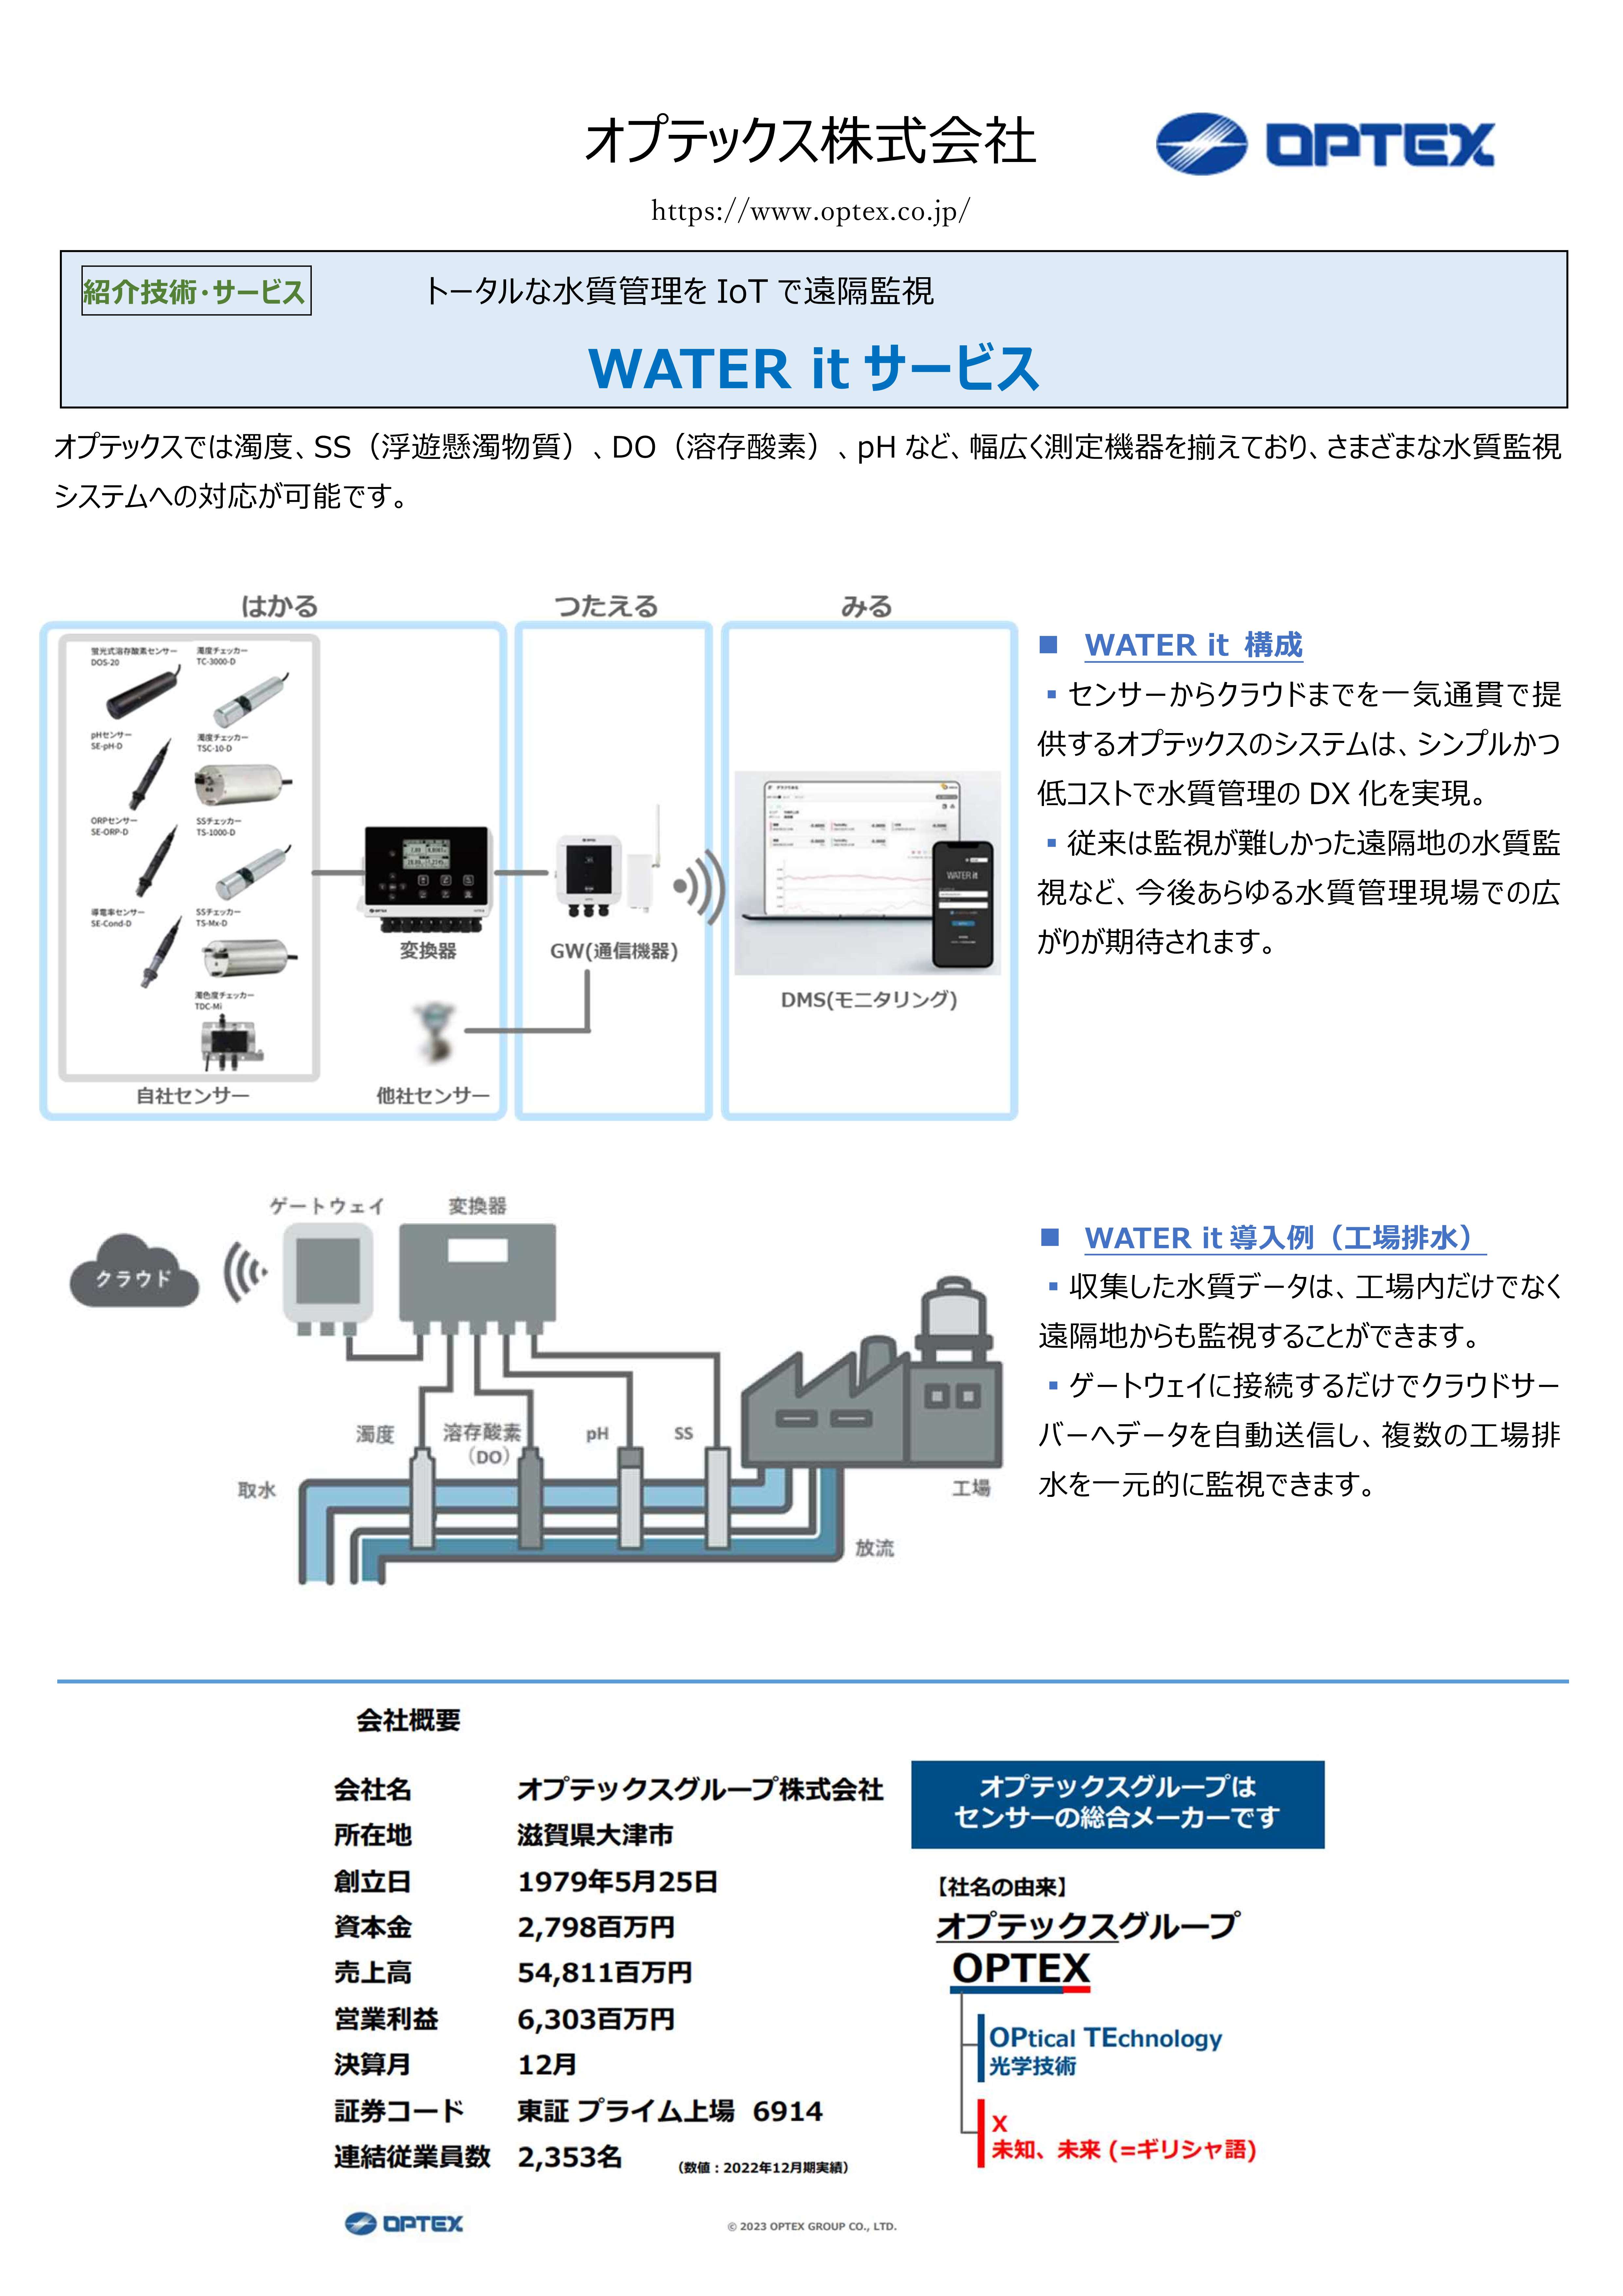 【オプテックス】_しが水環境ビジネス推進フォーラム_掲載資料